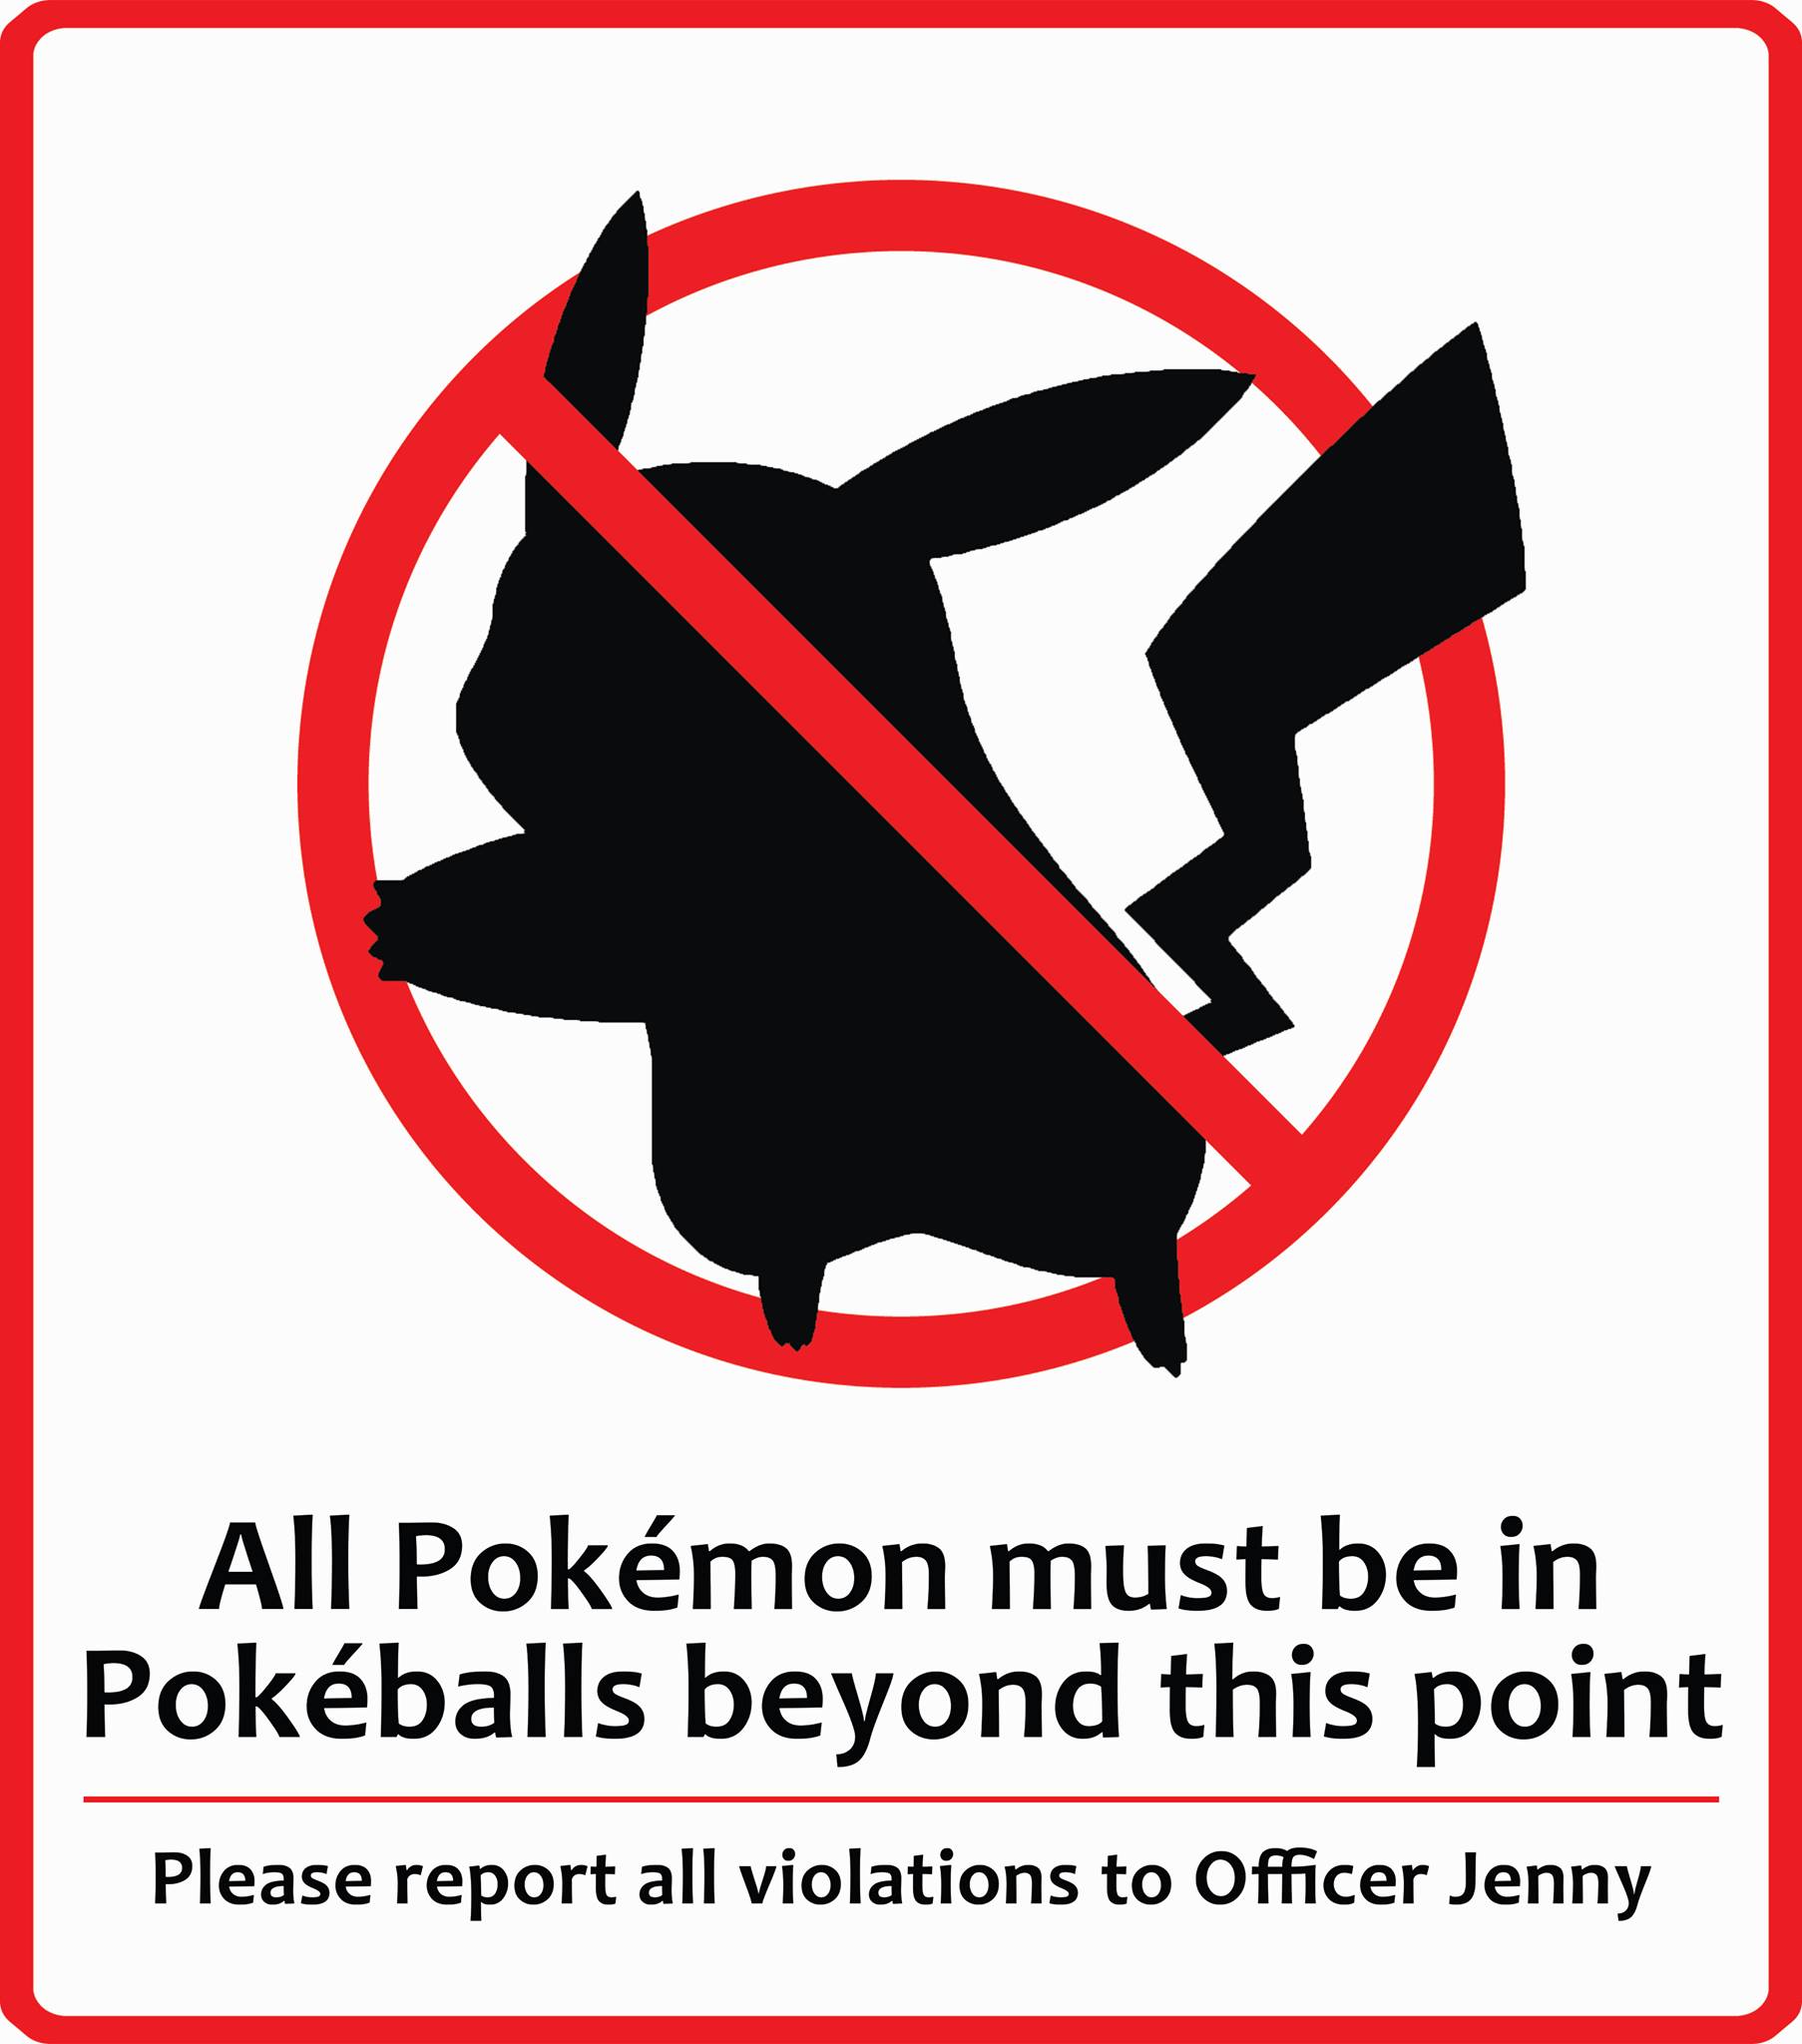 IMG:http://orig05.deviantart.net/e1da/f/2015/302/2/0/pokemon_warning_sign_by_alweron-d9er7x5.jpg